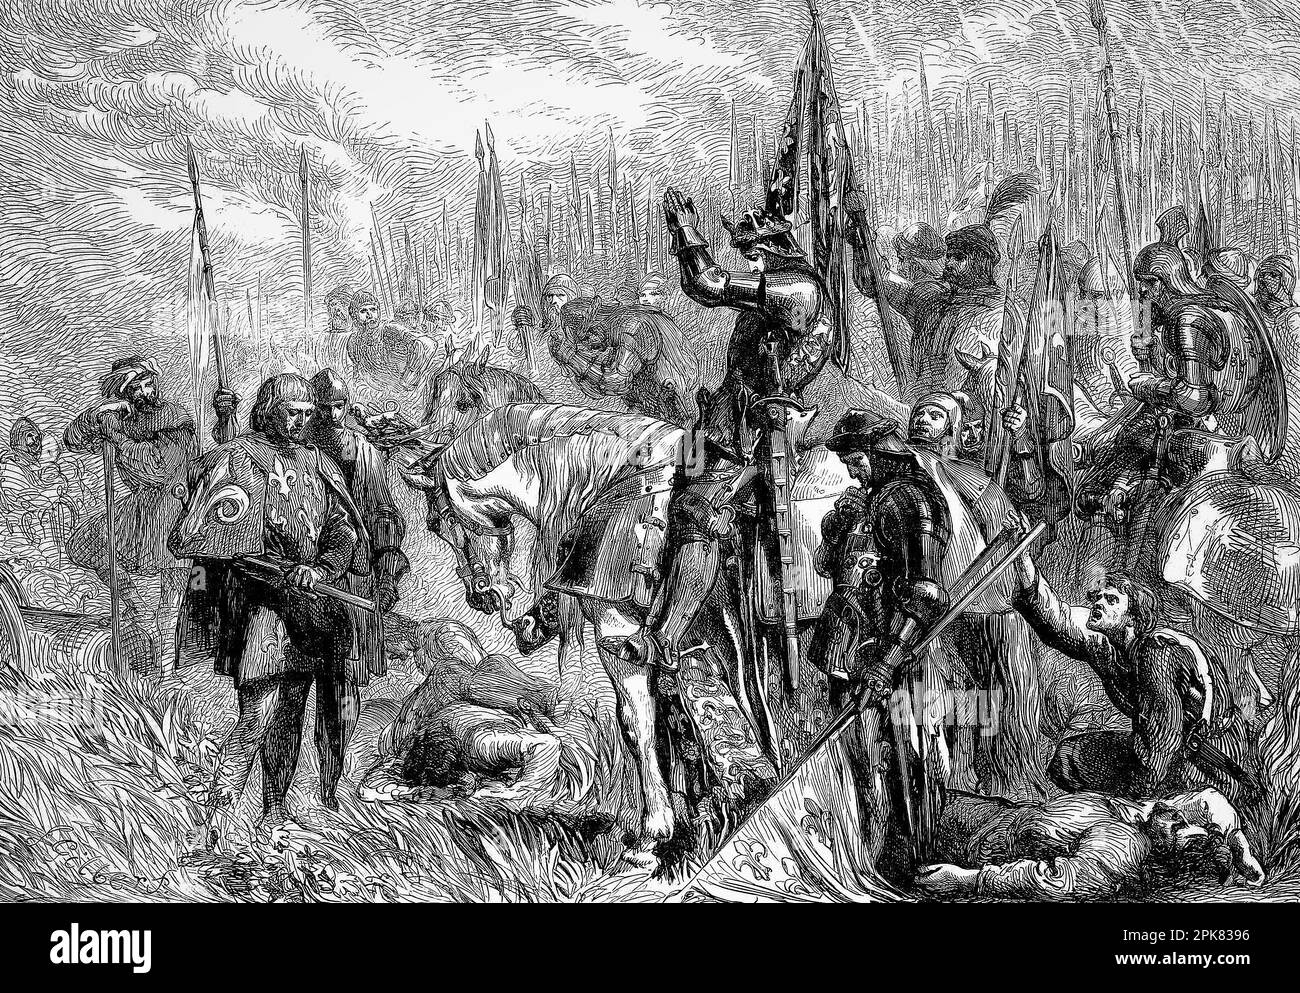 Illustrazione di Sir John Gilbert (1817-1897) della Battaglia di Agincourt, una vittoria inglese nella Guerra dei Cent'anni. Quando il re Enrico V d'Inghilterra condusse le sue truppe in battaglia e partecipò a combattimenti a mani nude, l'inaspettata vittoria inglese contro l'esercito francese numericamente superiore amplificò il morale e il prestigio inglese e paralizzò la Francia. Iniziò un nuovo periodo di dominio inglese nella guerra che durò 14 anni fino a quando la Francia sconfisse l'Inghilterra nell'assedio di Orléans nel 1429. Foto Stock